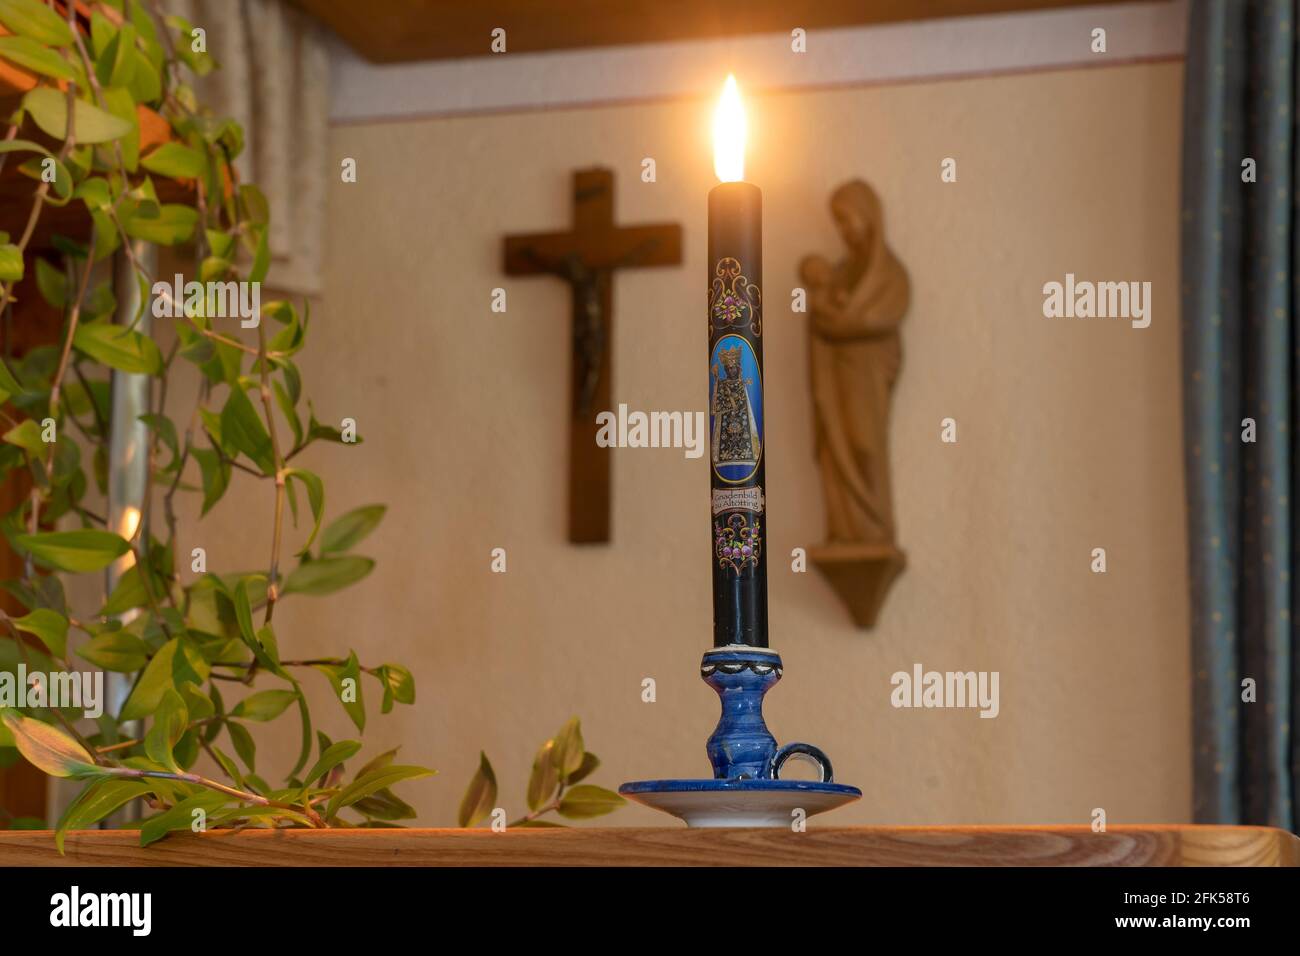 Wetterkerze vor dem Herrgottswinkel- christlicher Glaube die brennende Kerze soll Unheil BEI einem Gewitter abwehren Banque D'Images